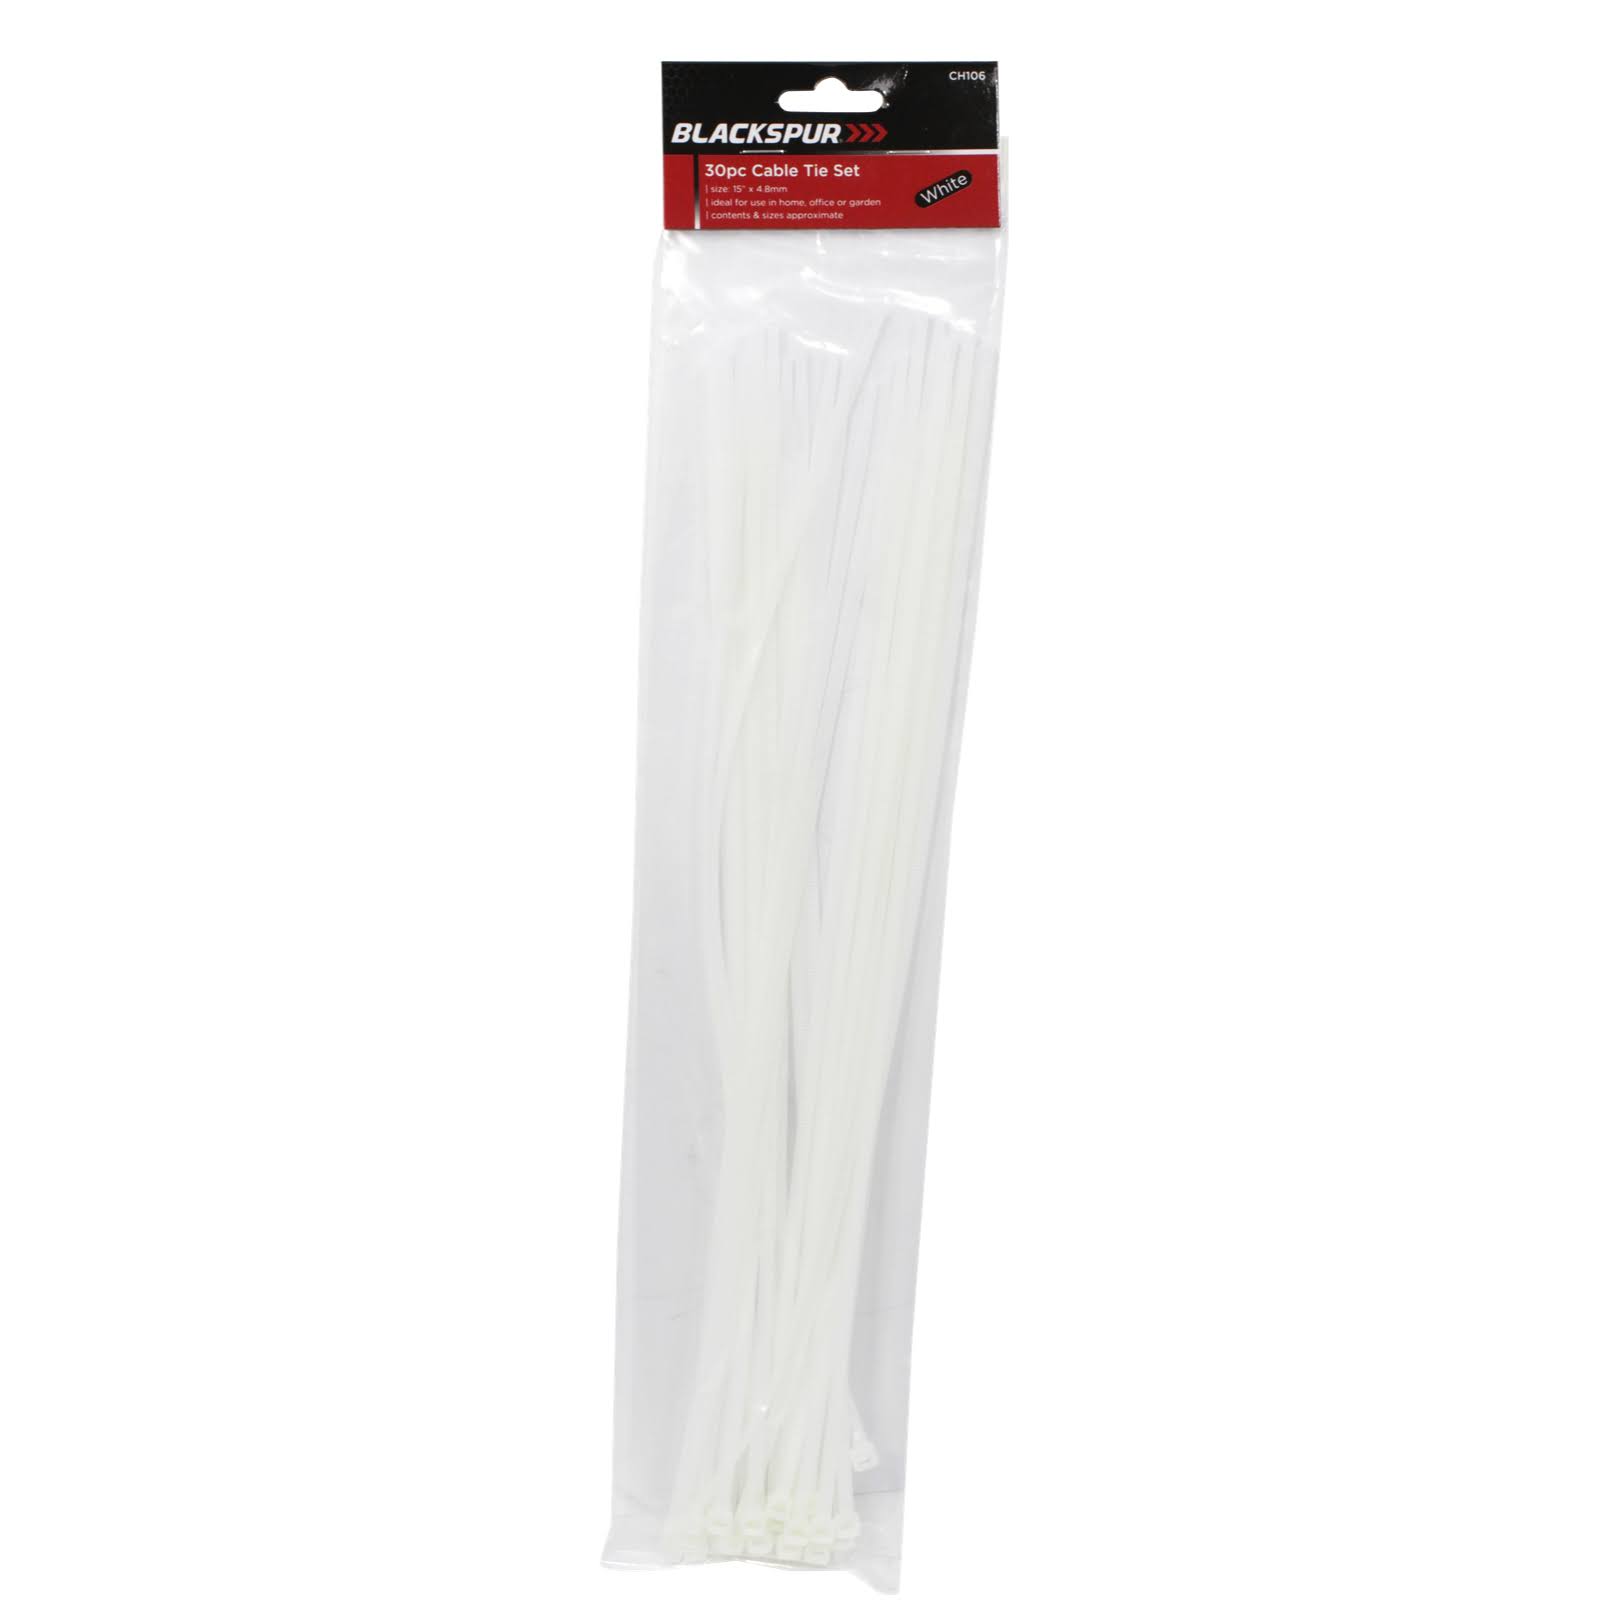 Blackspur 30pc White Cable Tie Set